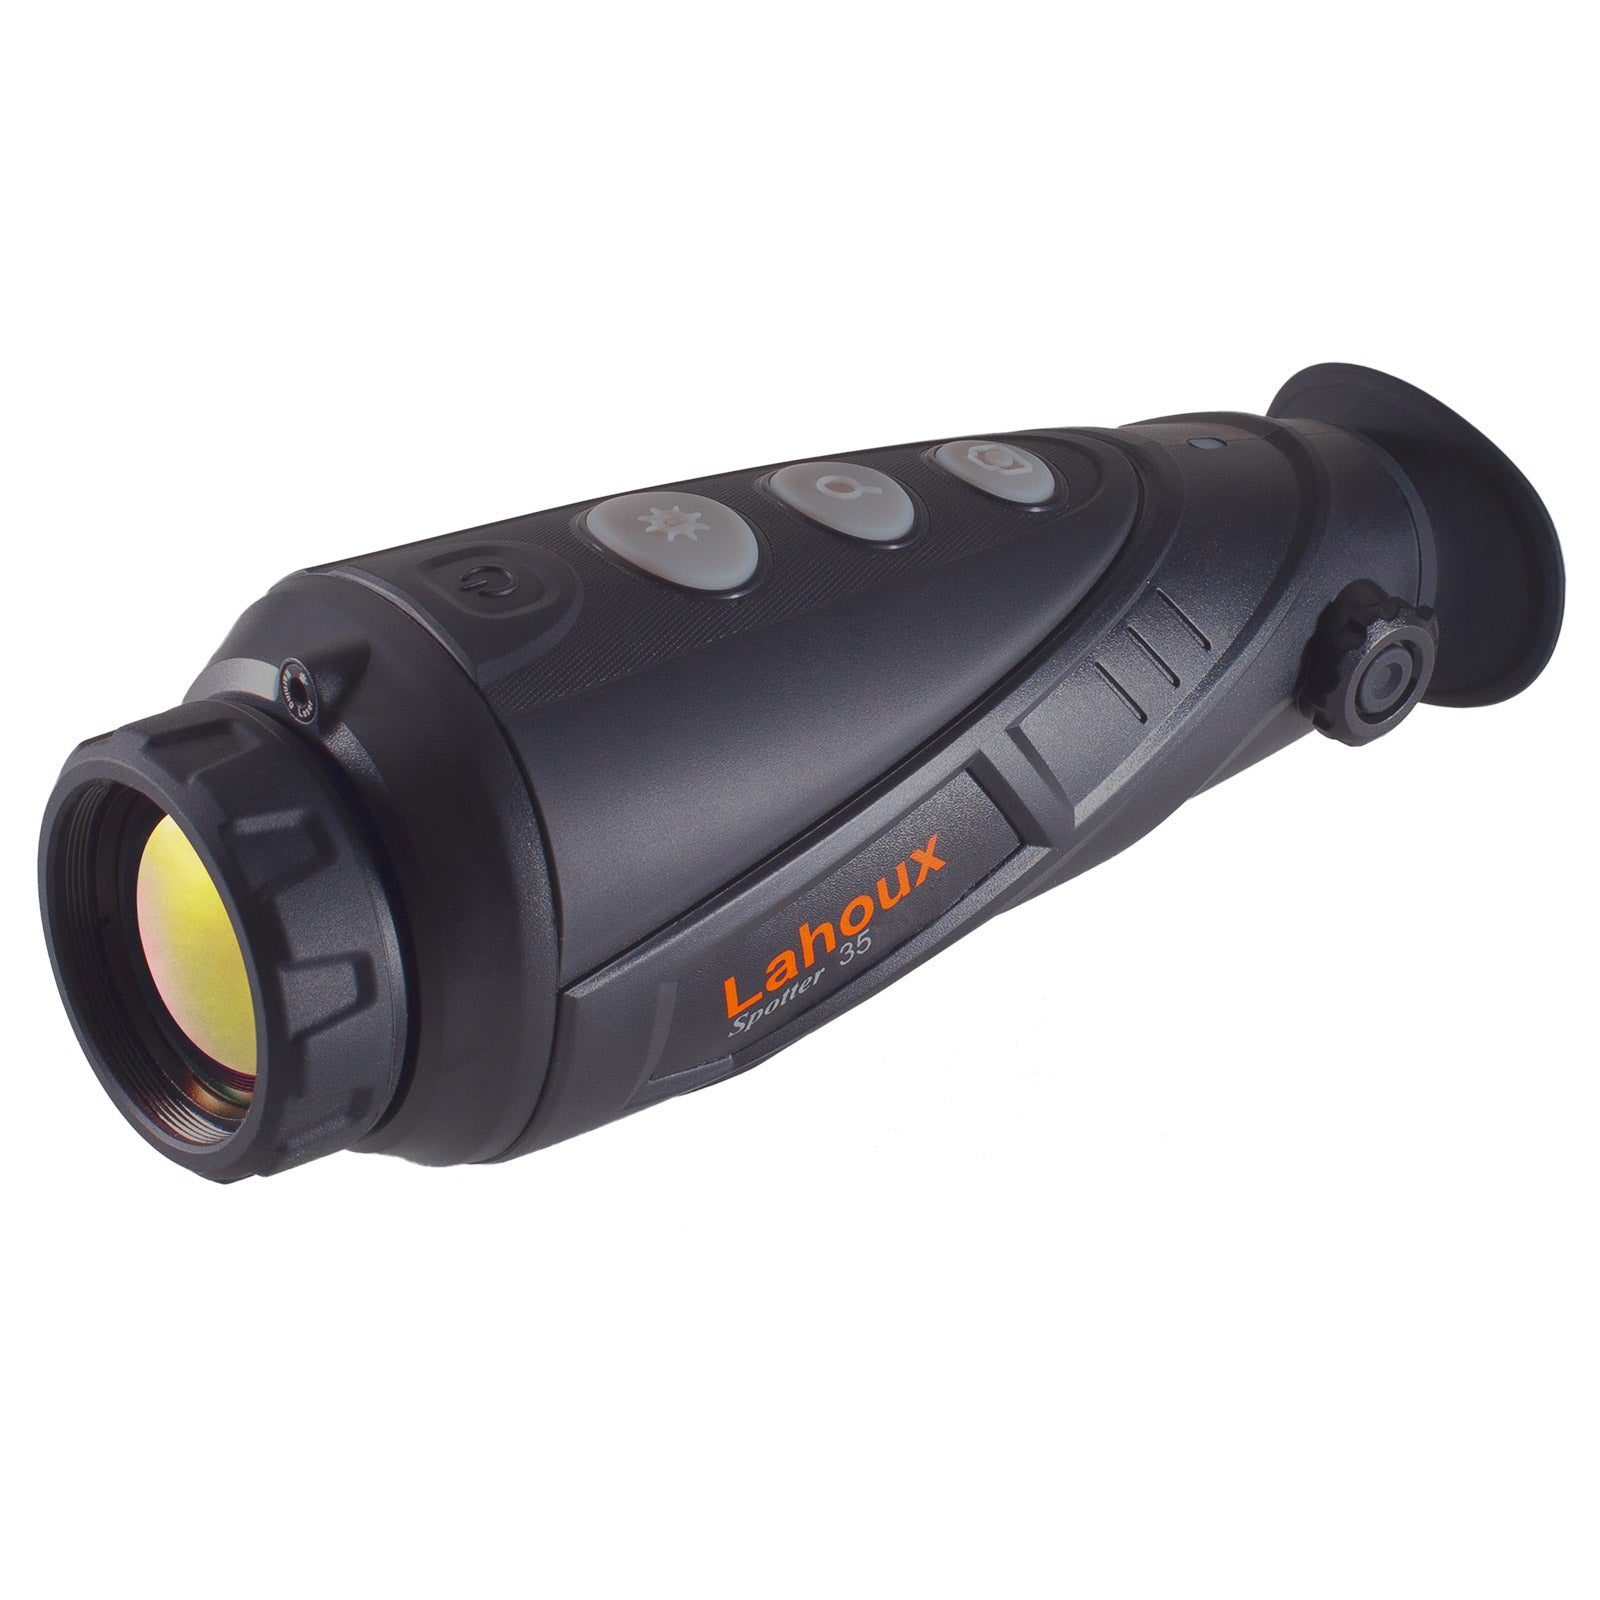 Es handelt sich hier um LAHOUX Spotter 35 - Wärmebildkamera für die Jagd.